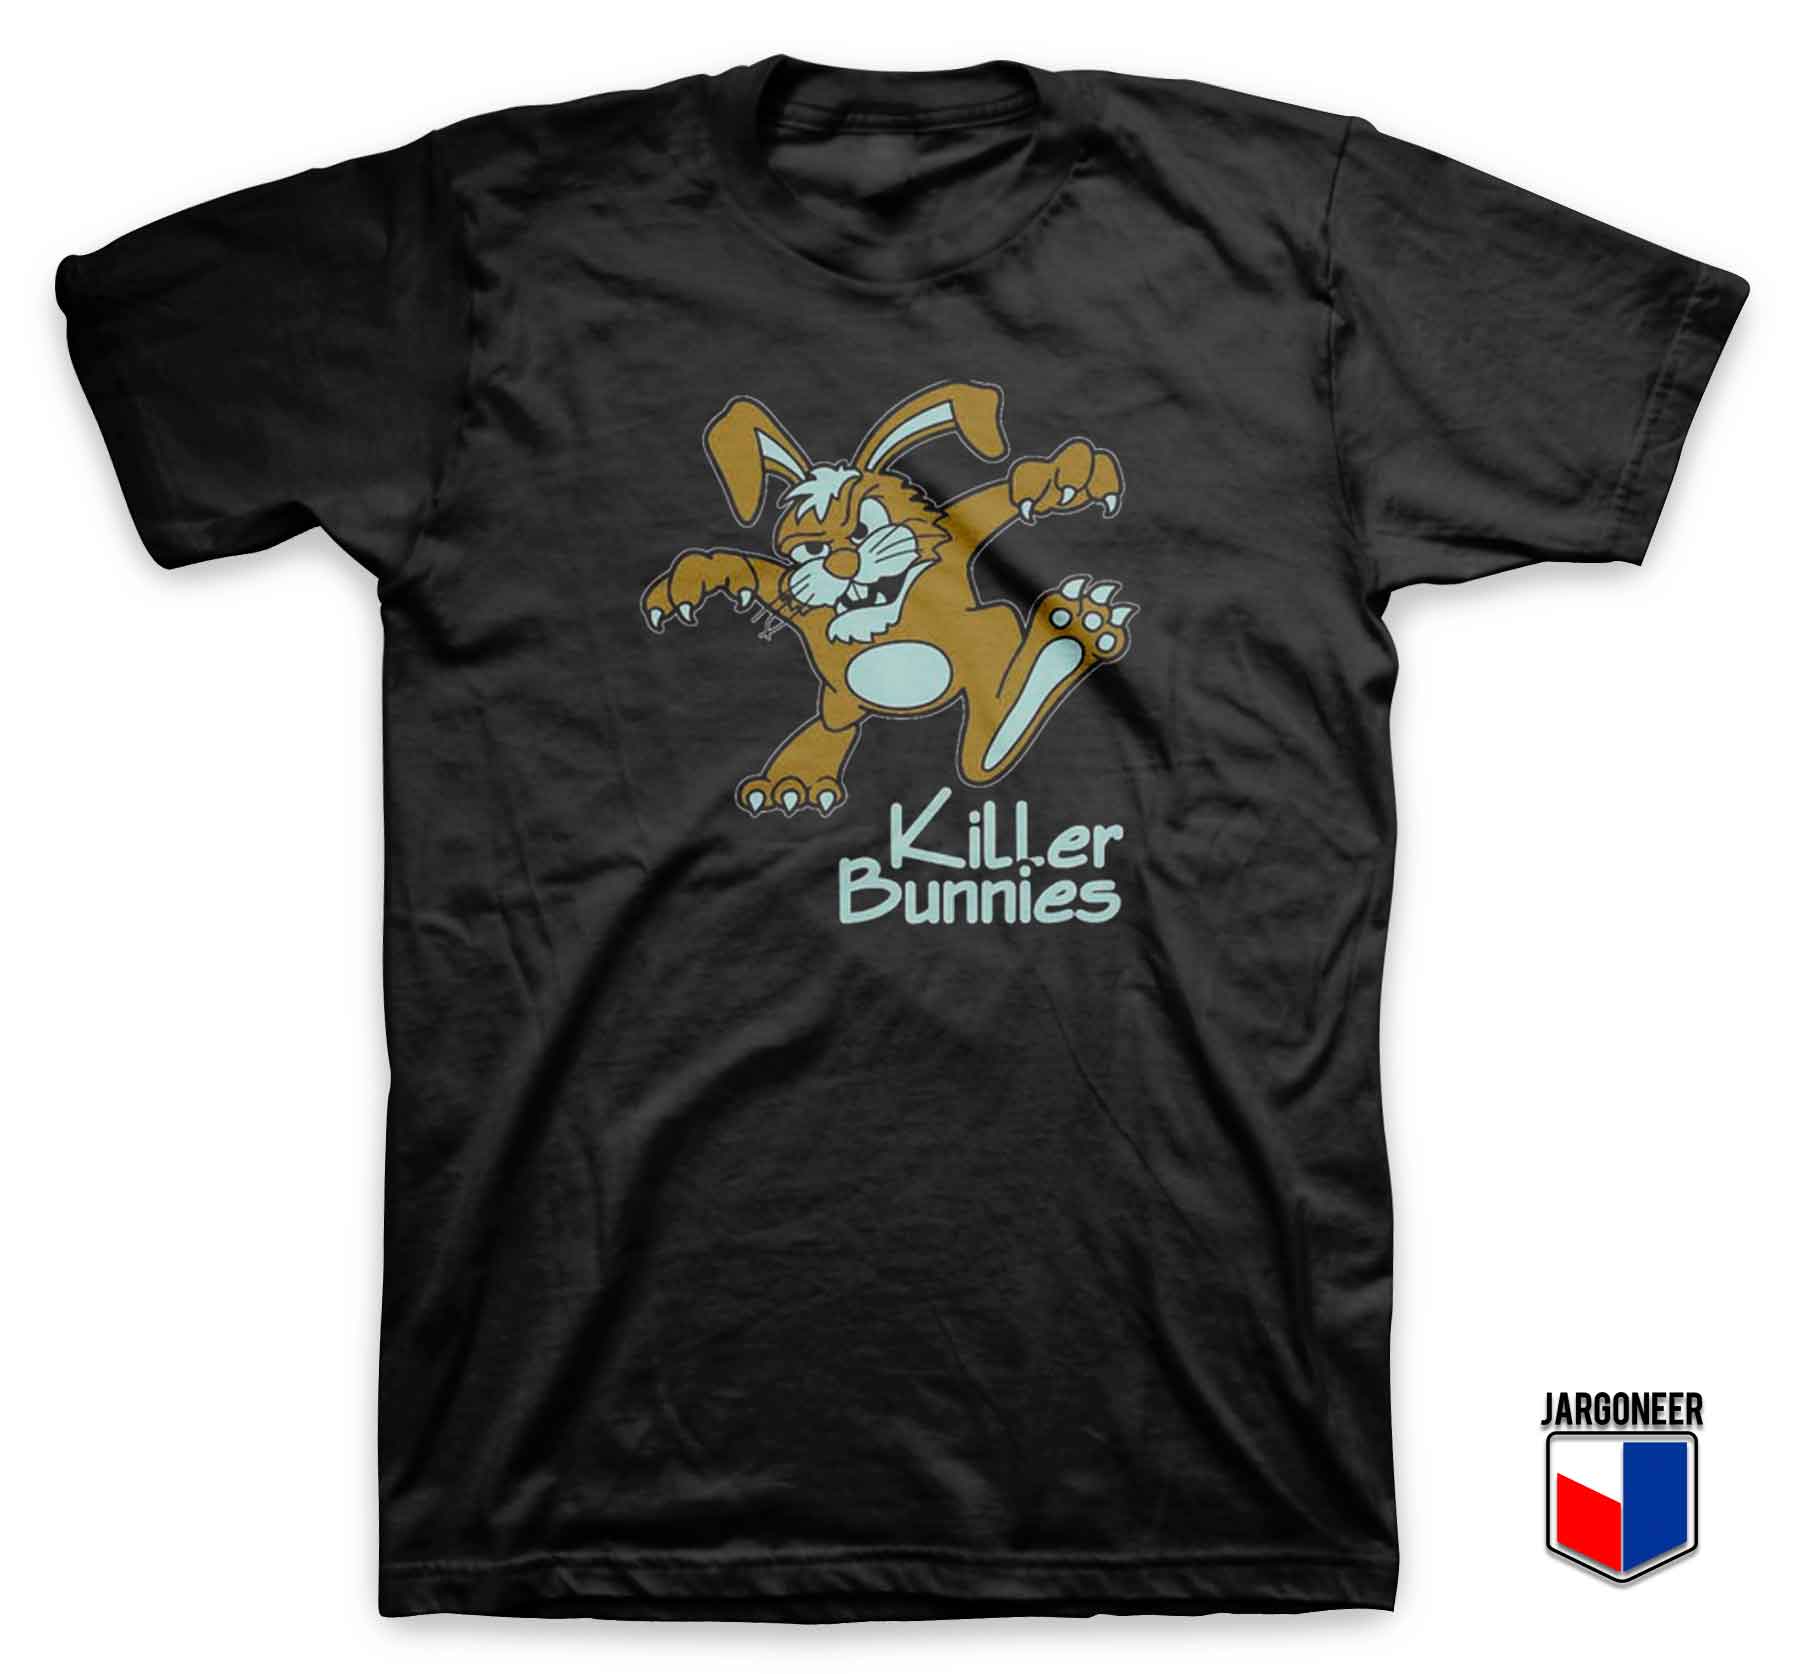 Killer Bunnies - Shop Unique Graphic Cool Shirt Designs